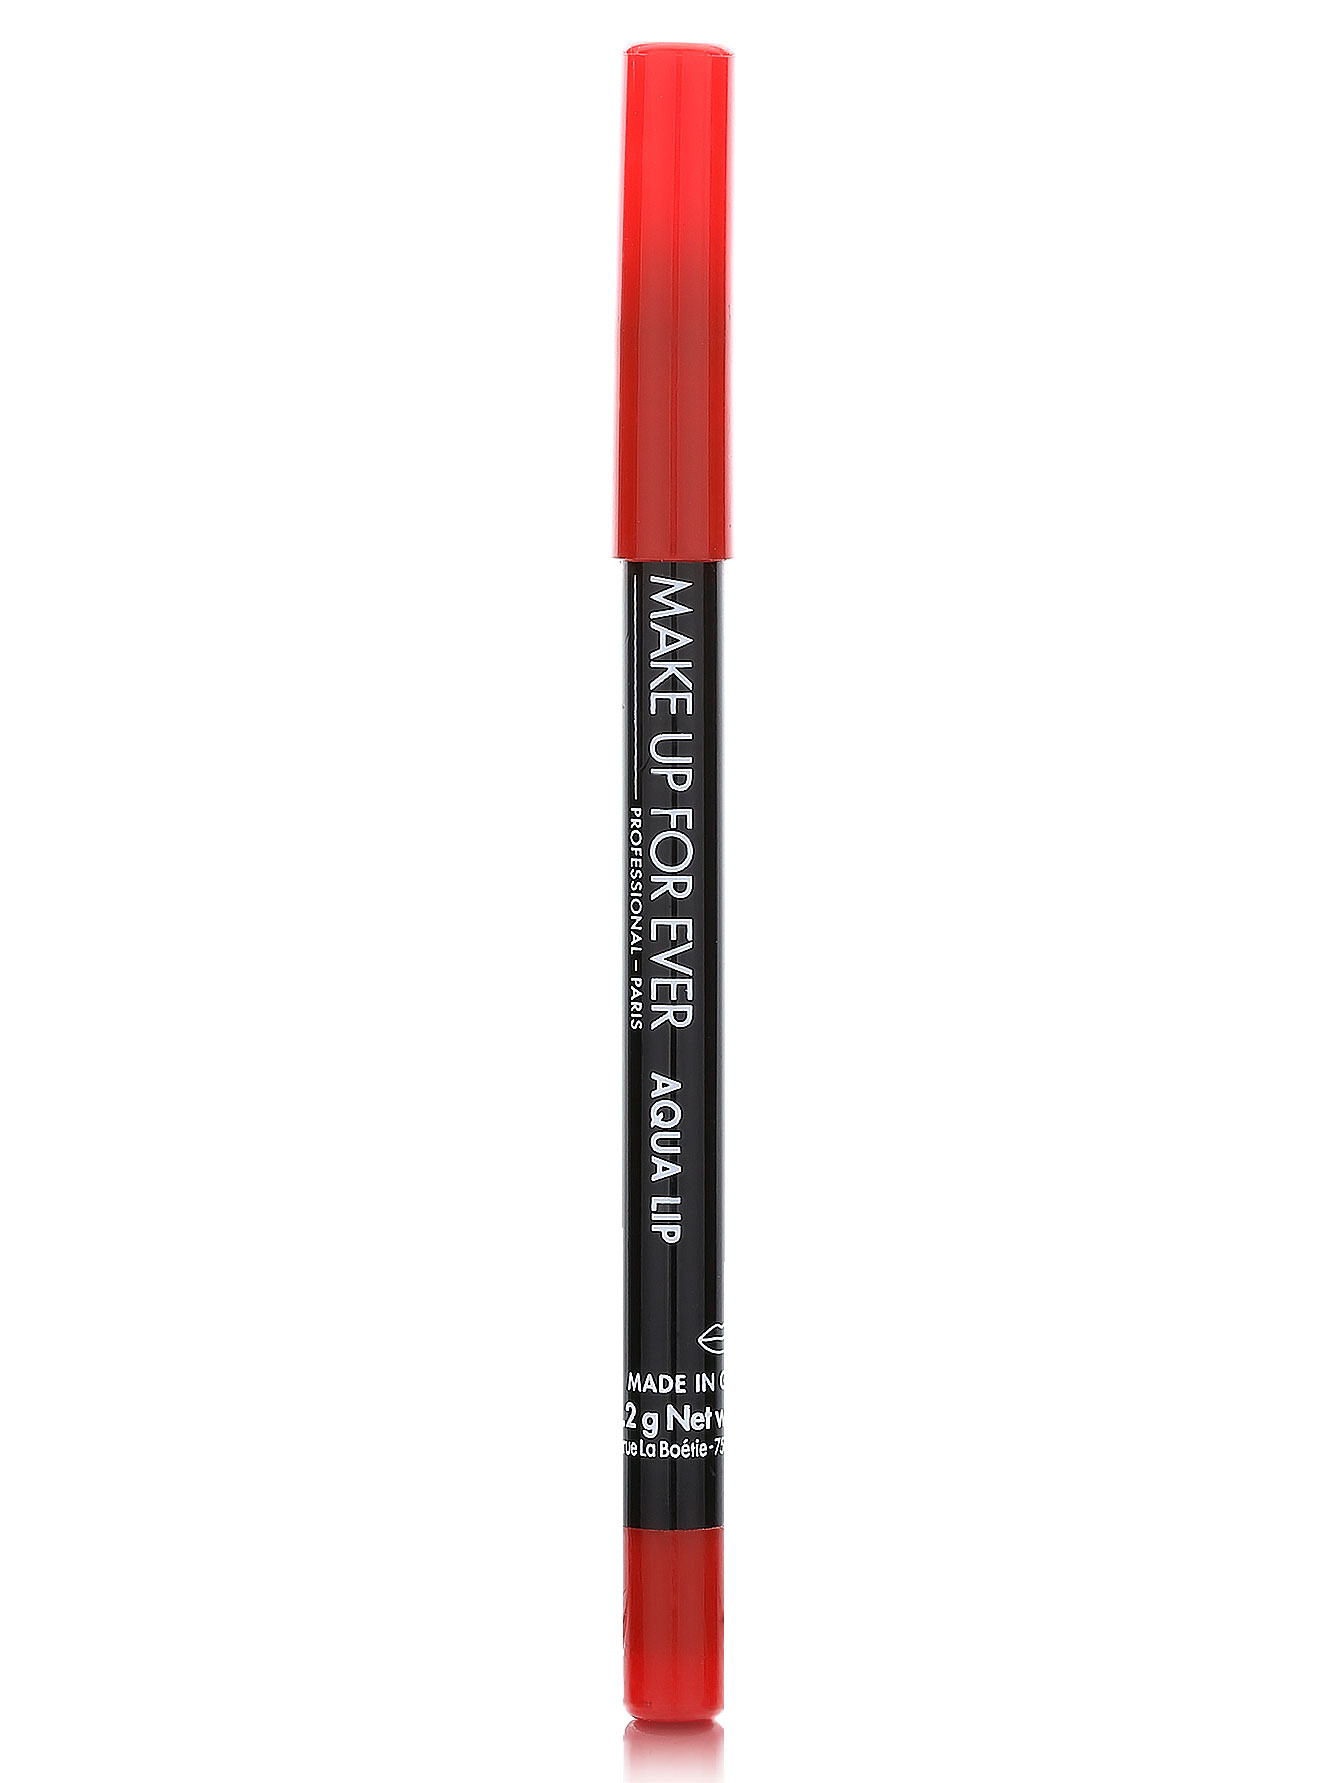  Водостойкий карандаш для губ - №25C красно-оранжевый, Aqua Summer - Общий вид